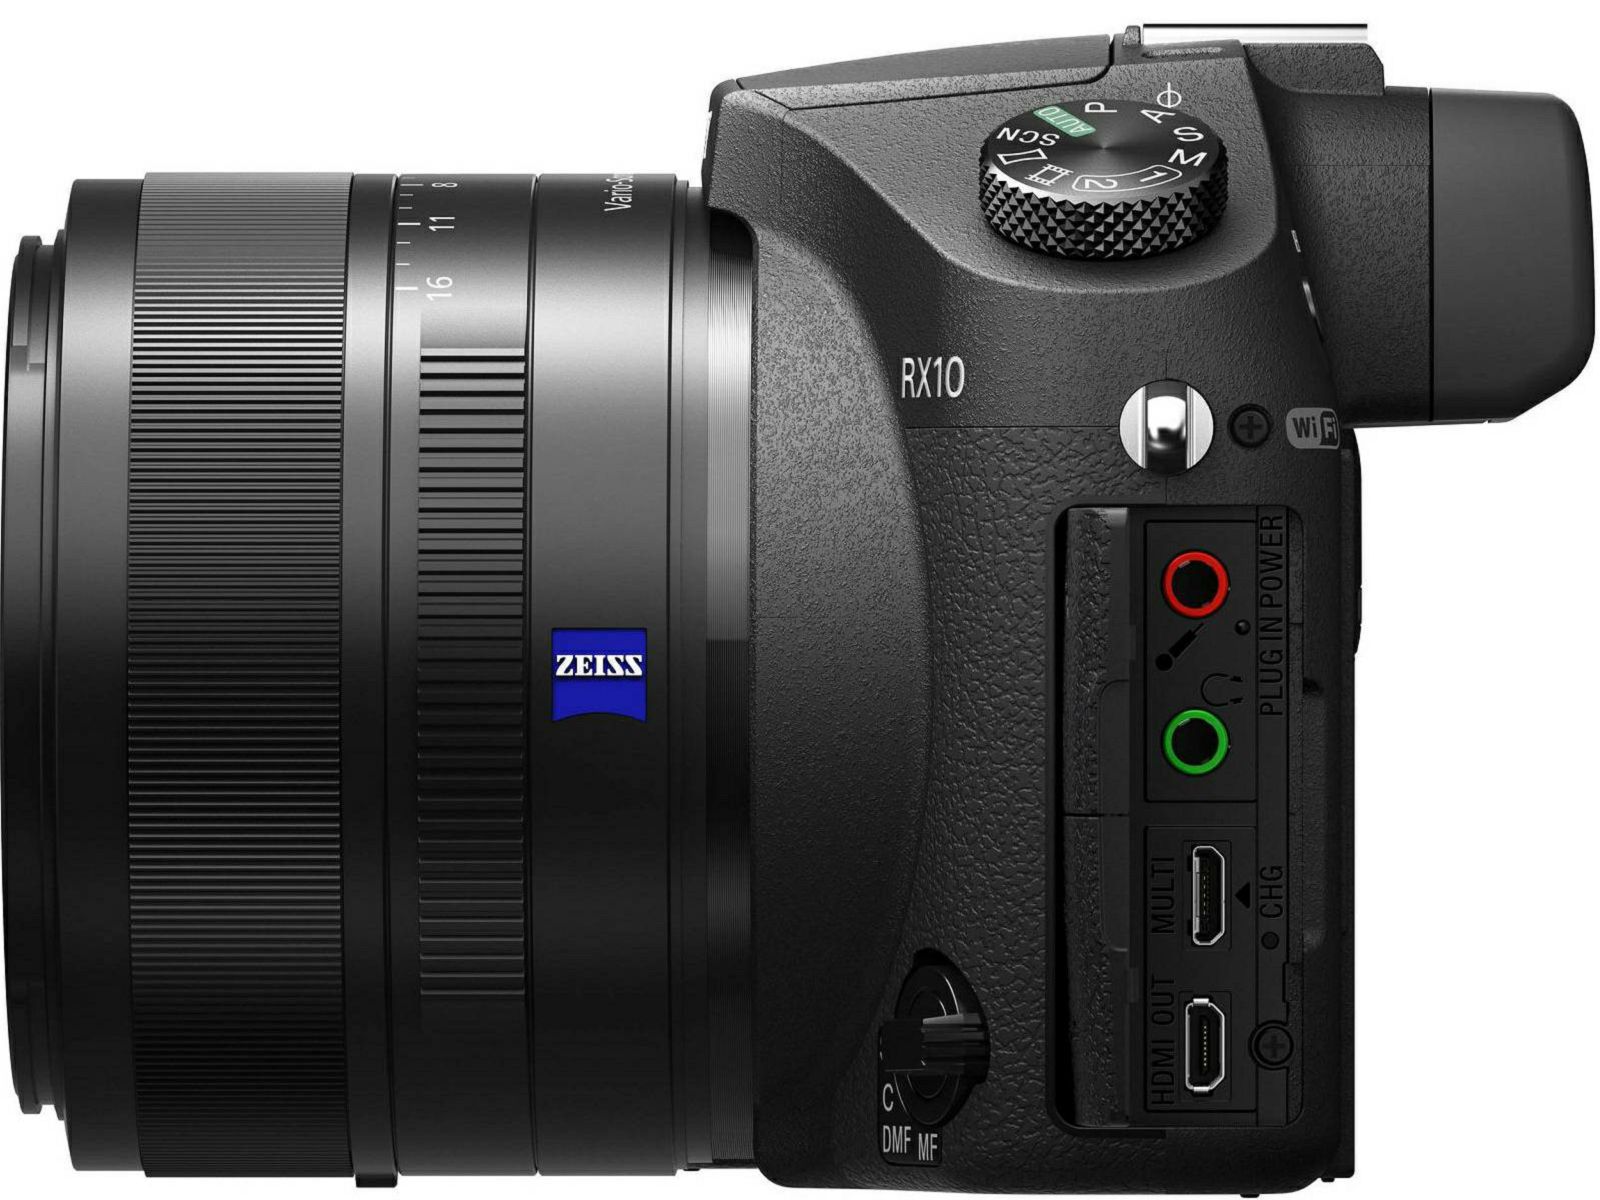 Sony Cyber-shot DSC-RX10 kompaktni digitalni fotoaparat s integriranim objektivom Carl Zeiss Vario-Sonnar T 8.8-73.3mm f/2.8 Digital Camera DSCRX10 (DSCRX10.CE3)